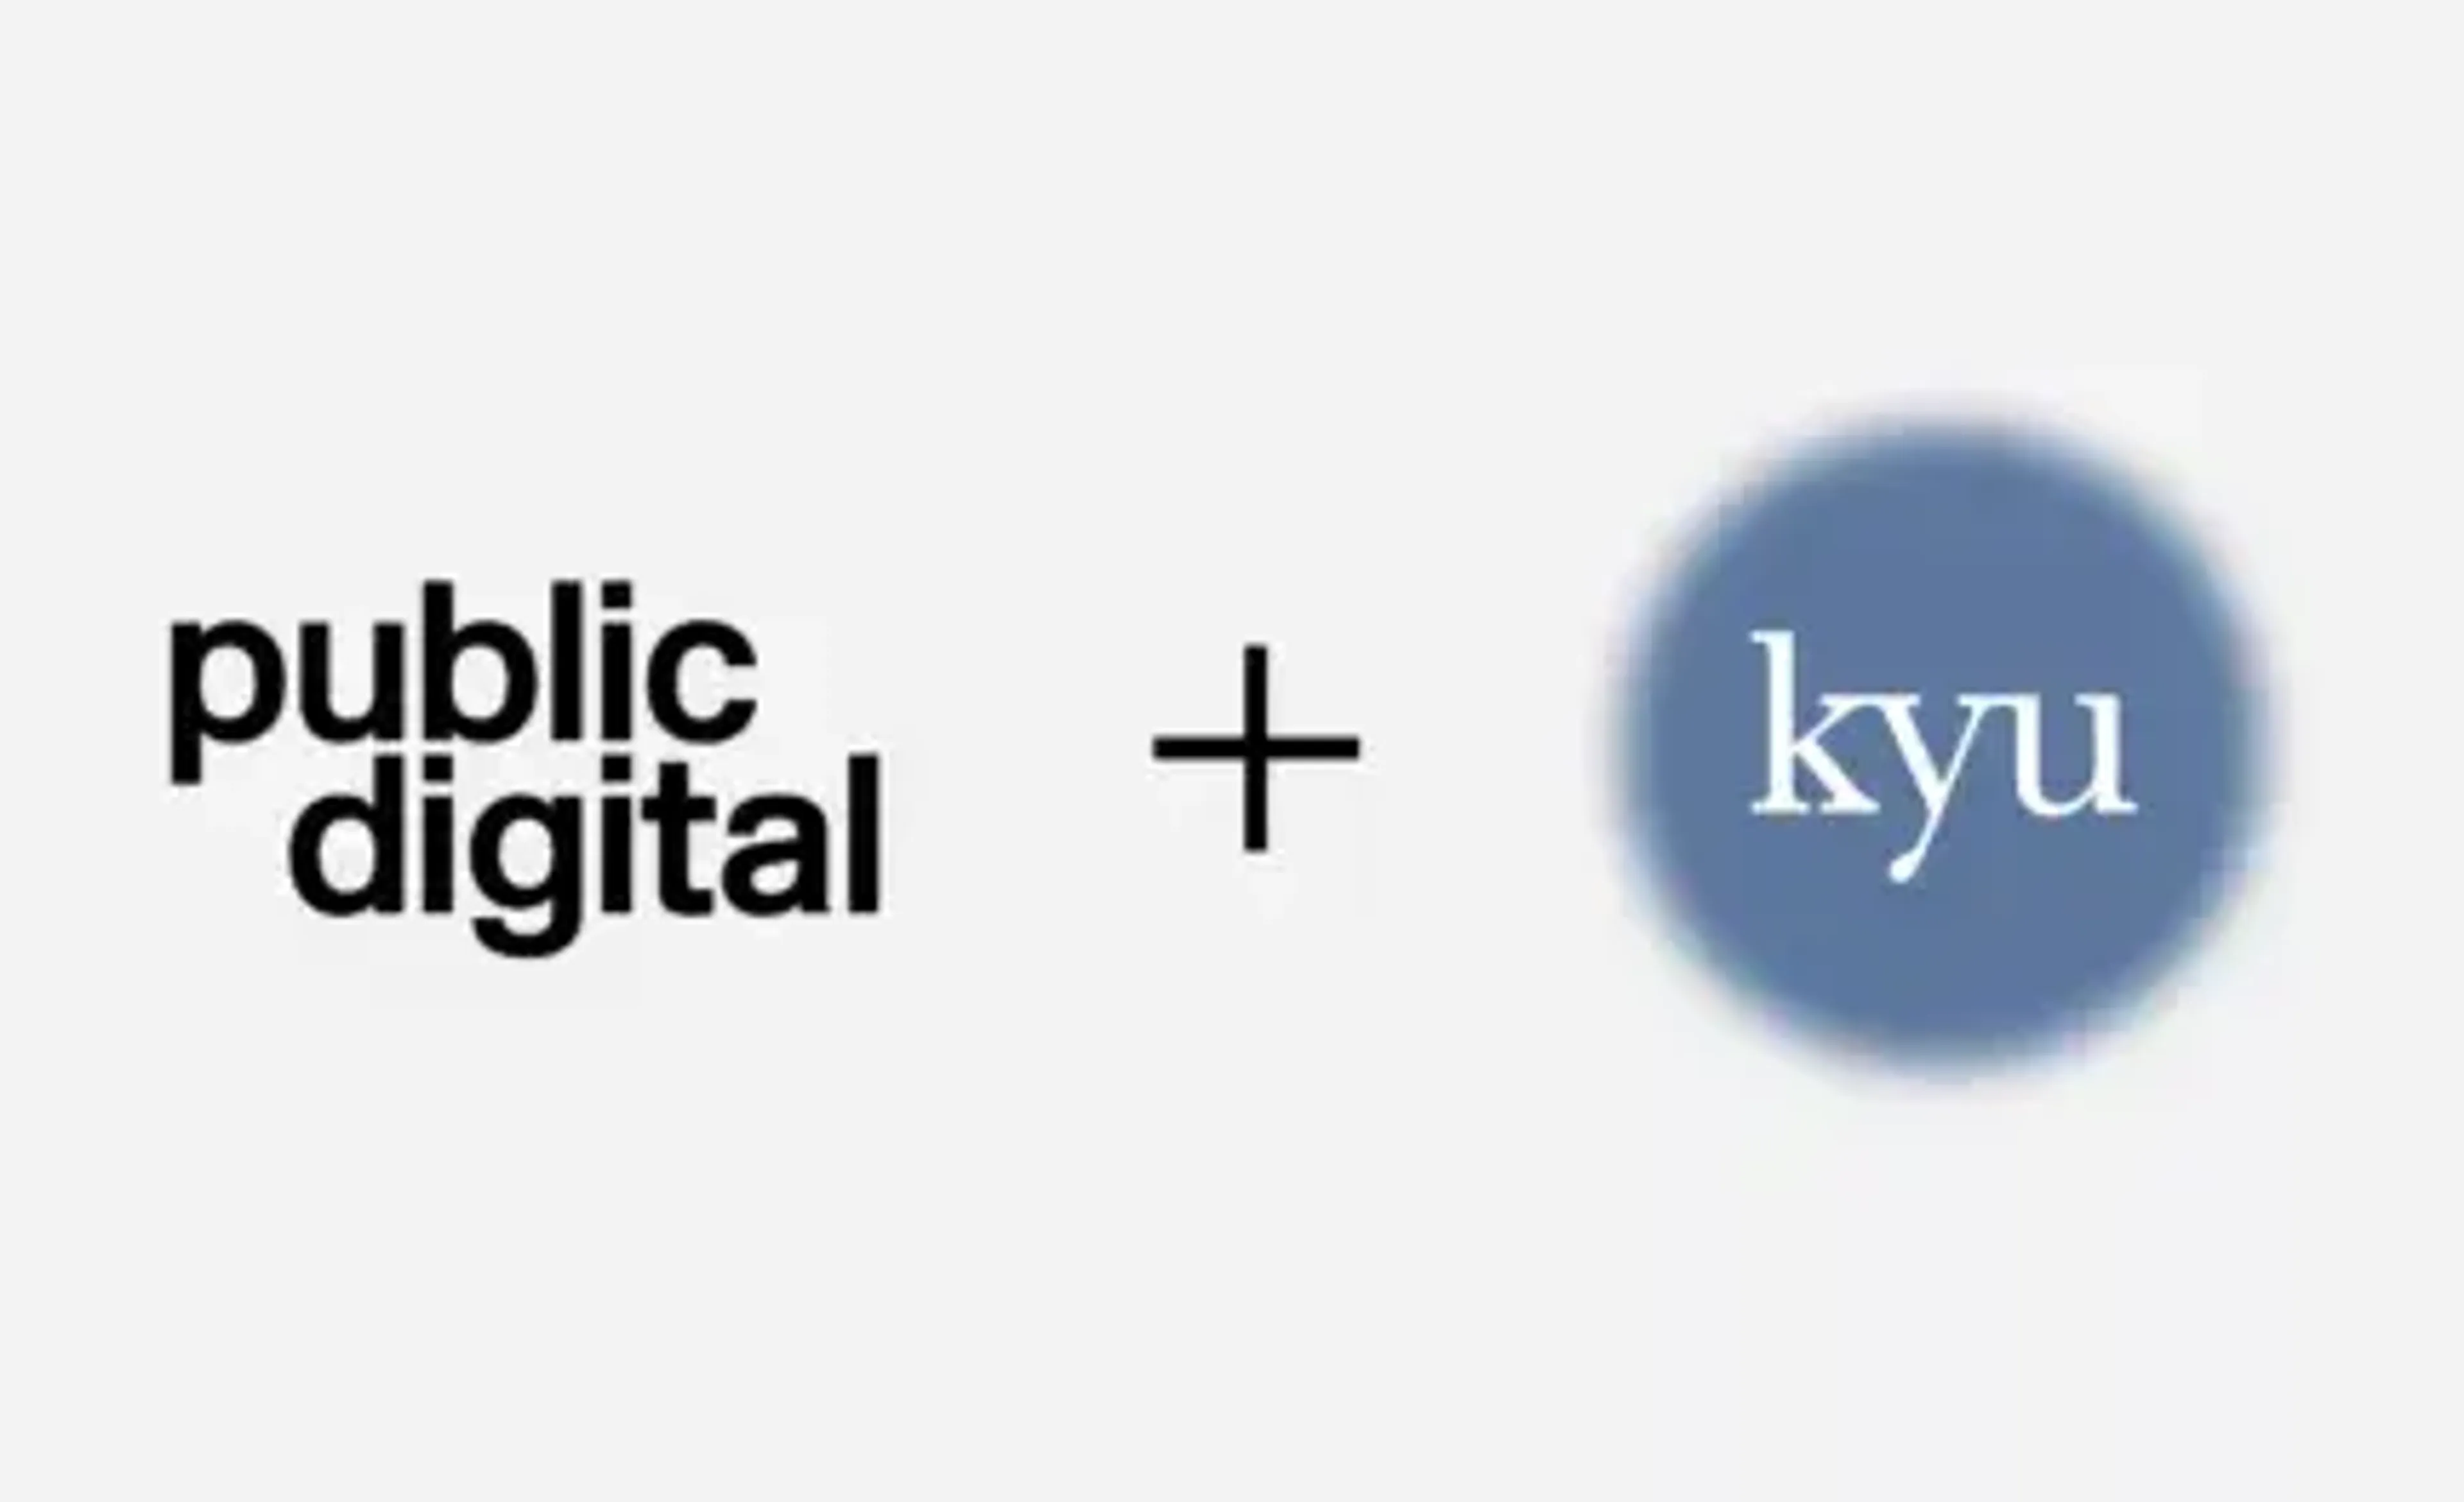 Public digital and kyu